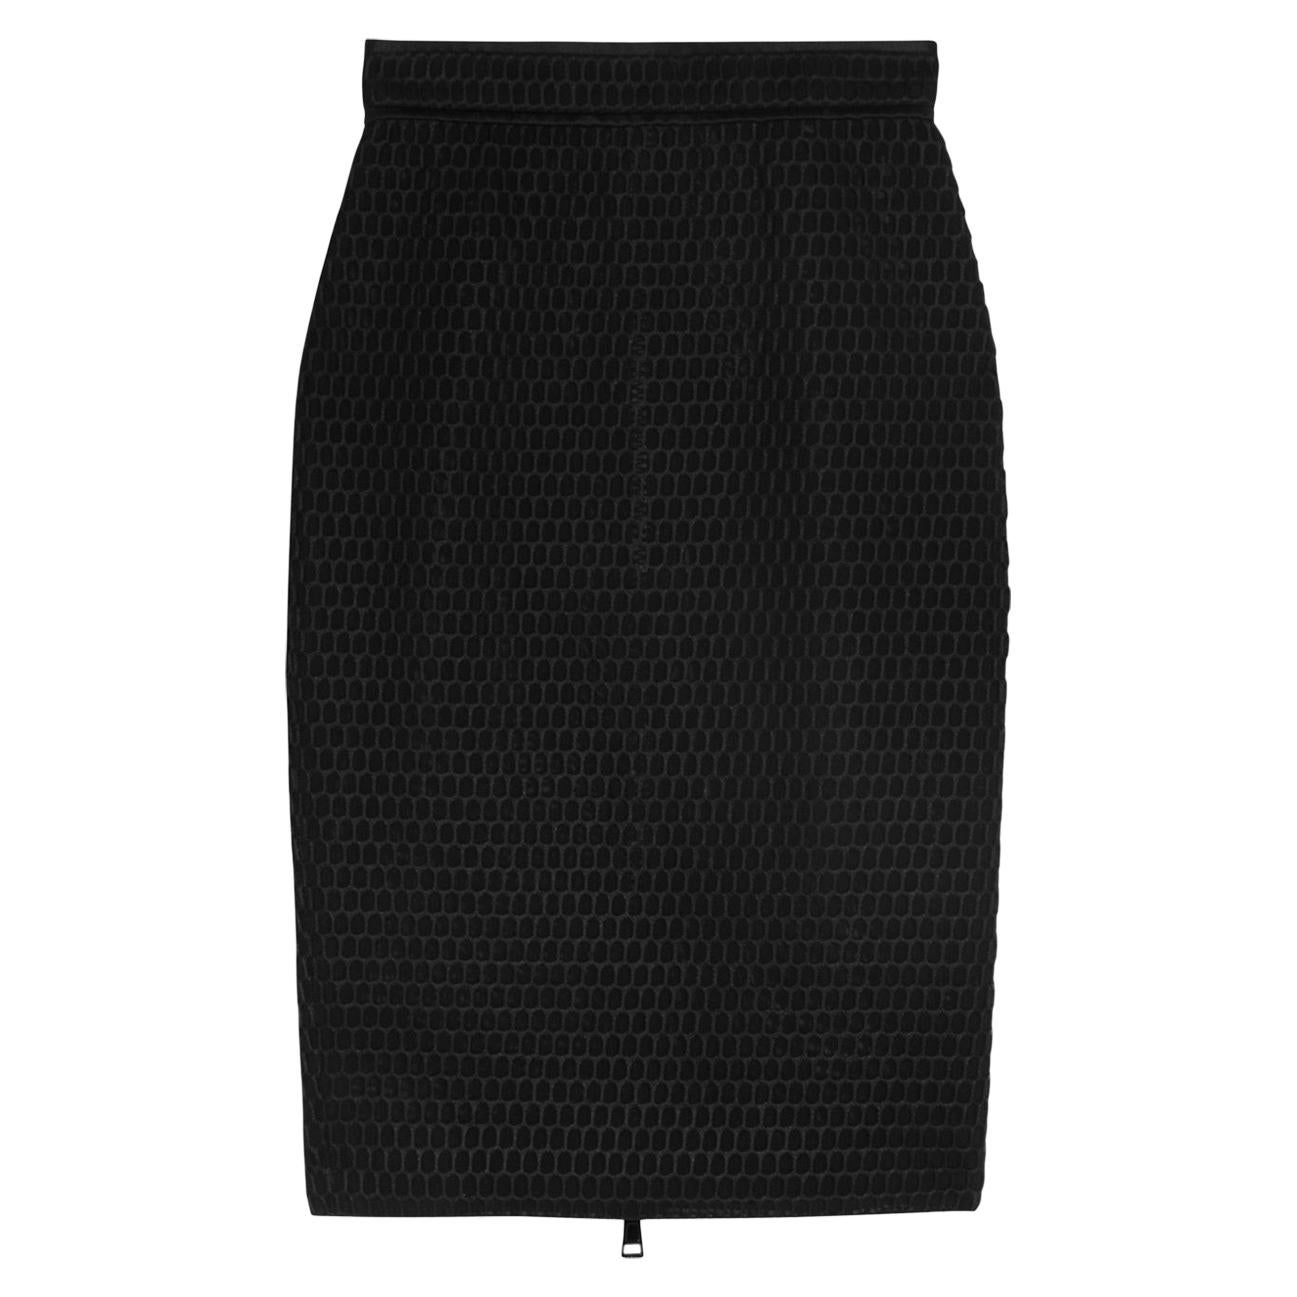 ~ALEXANDRA~ Black & White Monochrome Bodycon Midi Pencil Skirt Size 8 10 12 